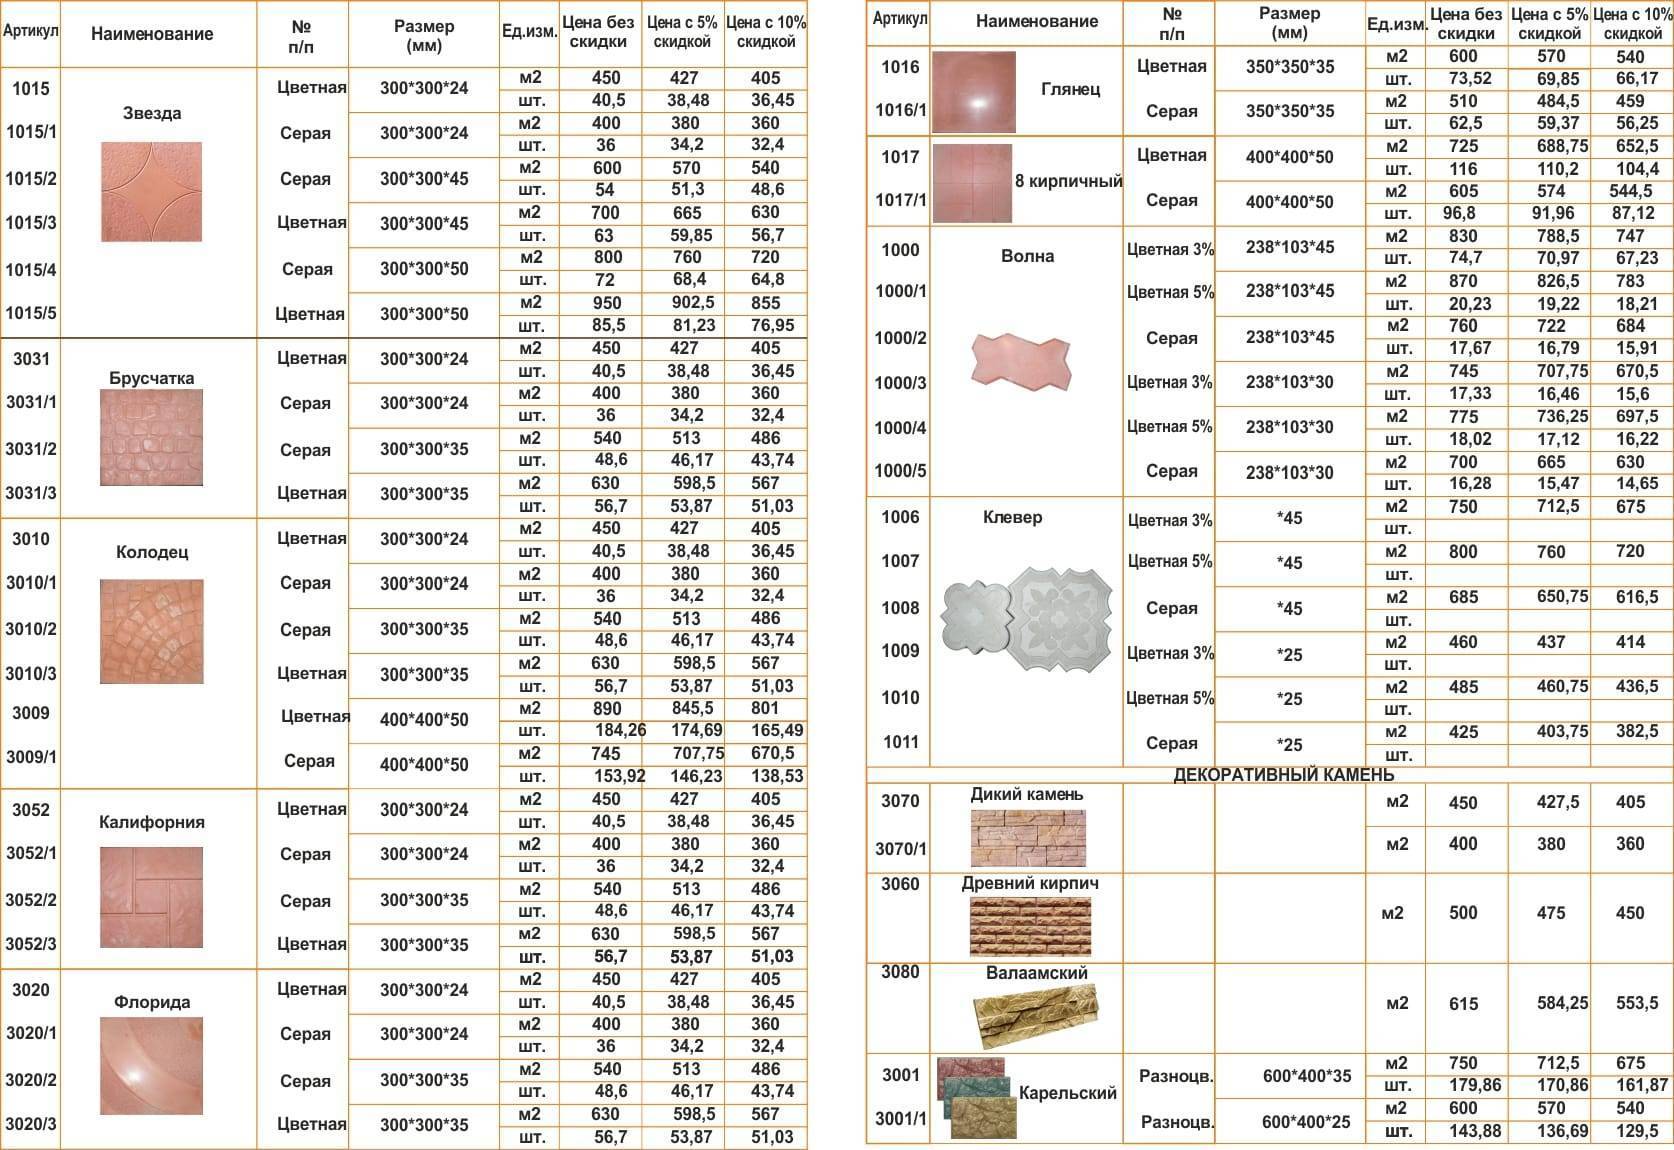 Размеры керамической плитки: стандарты кафельной плитки для пола и стен кухни, ванной, туалета и других комнат